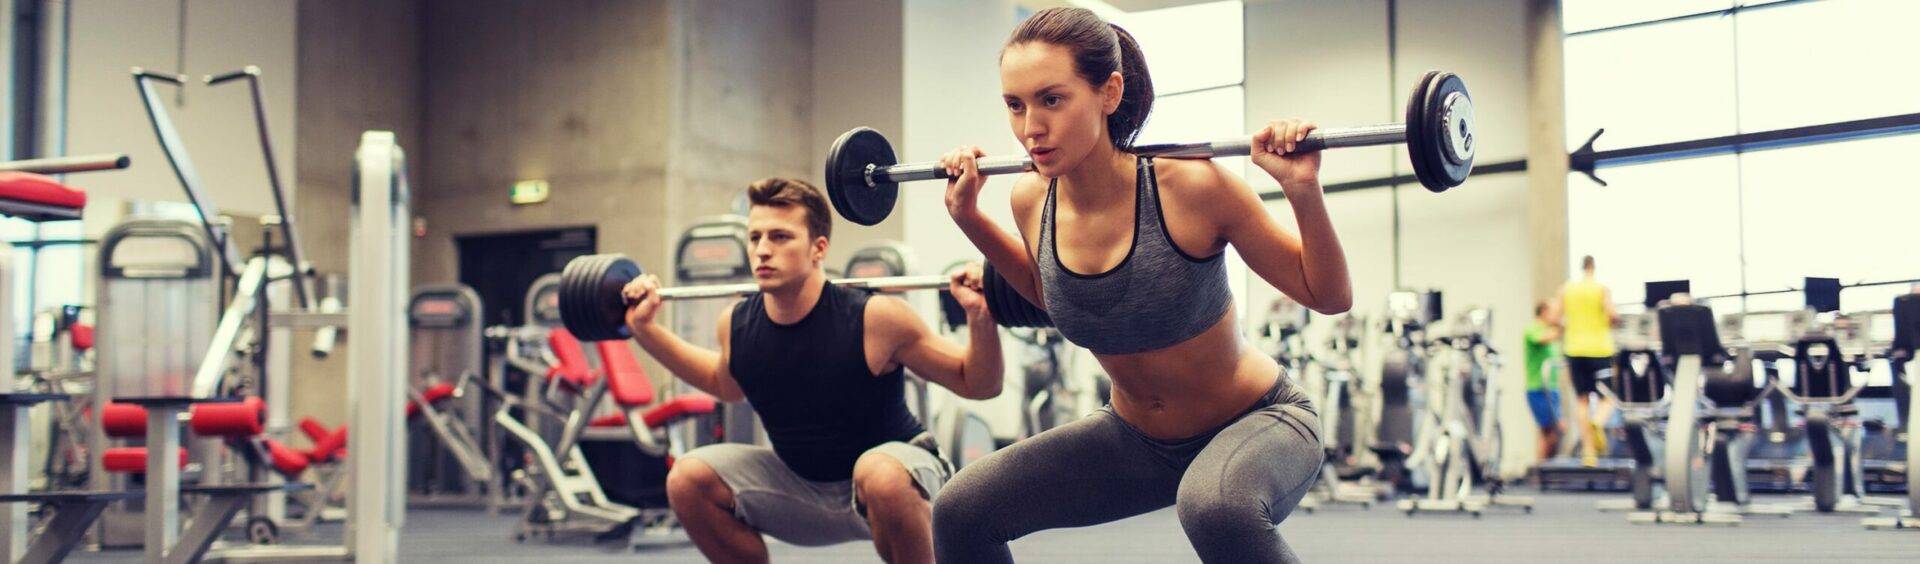 musculação ou exercícios aeróbicos